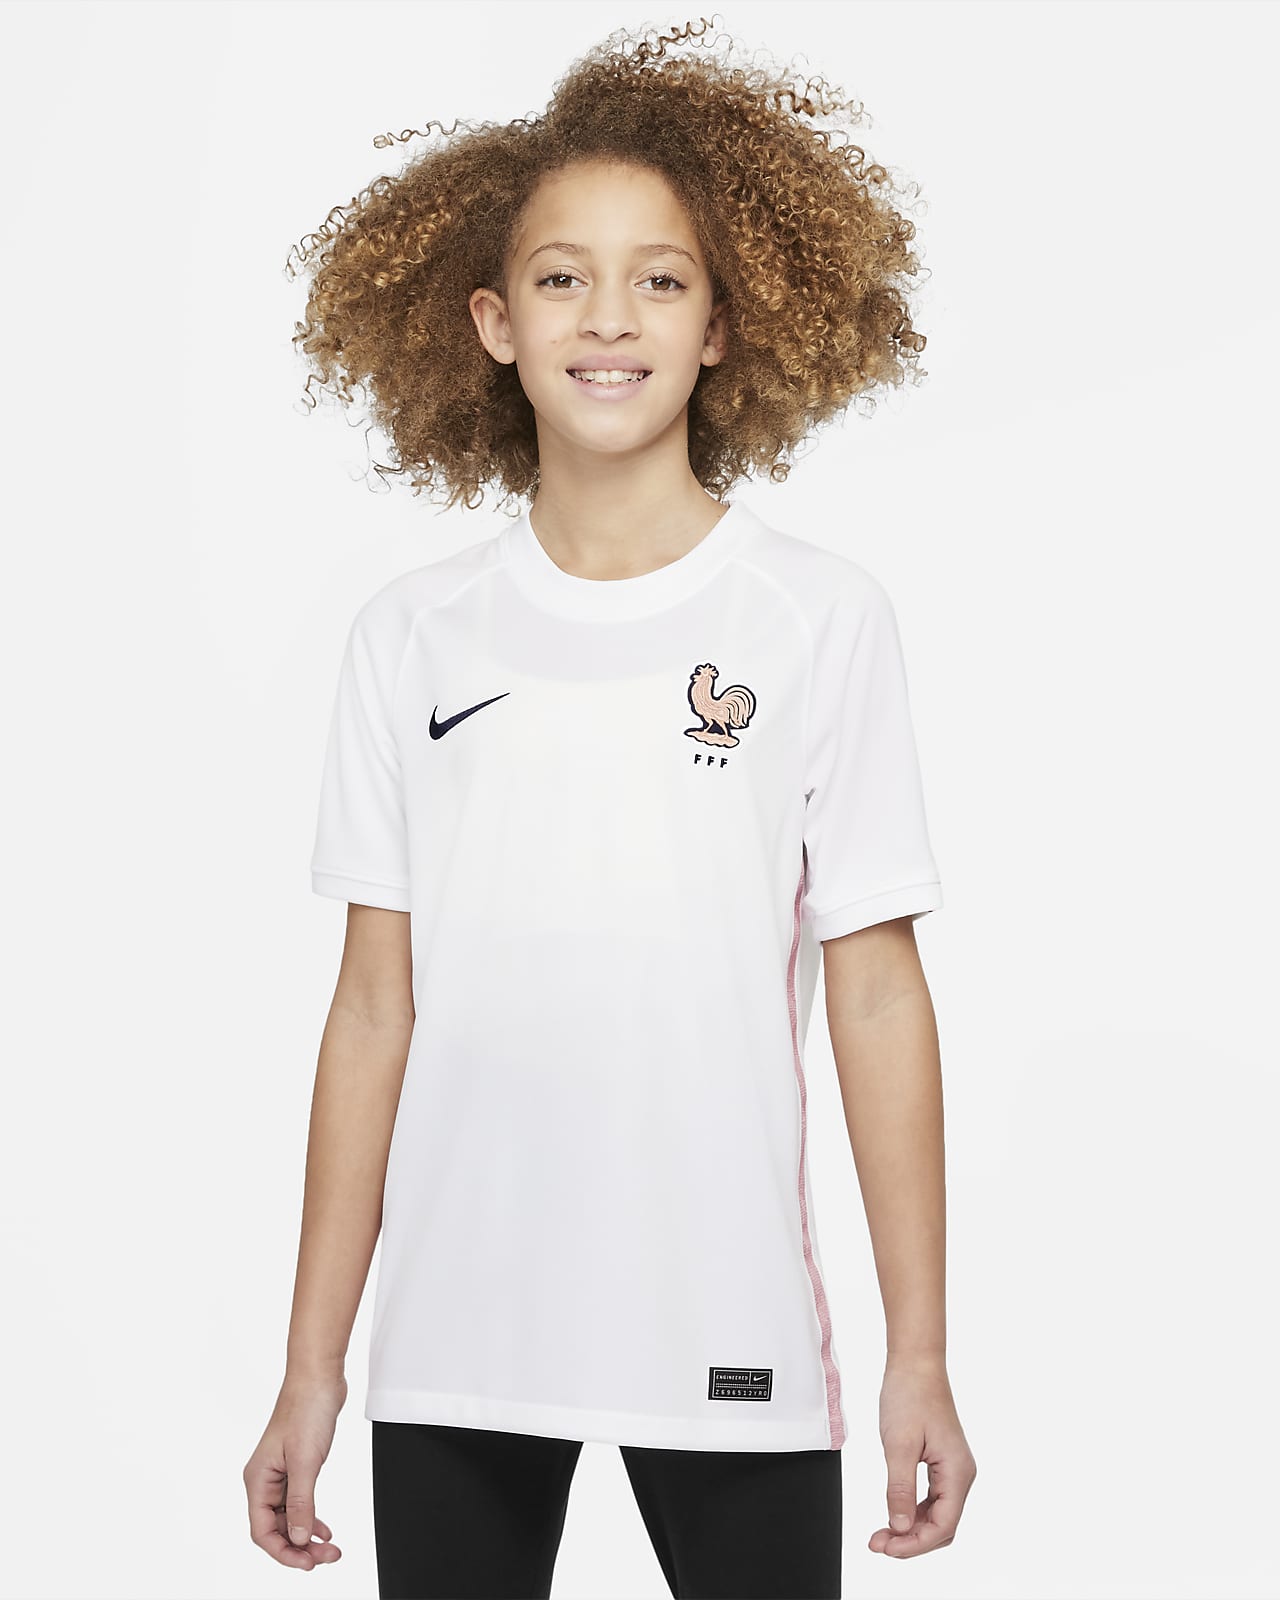 FFF 2022 Stadium Away Older Kids' Nike Dri-FIT Football Shirt